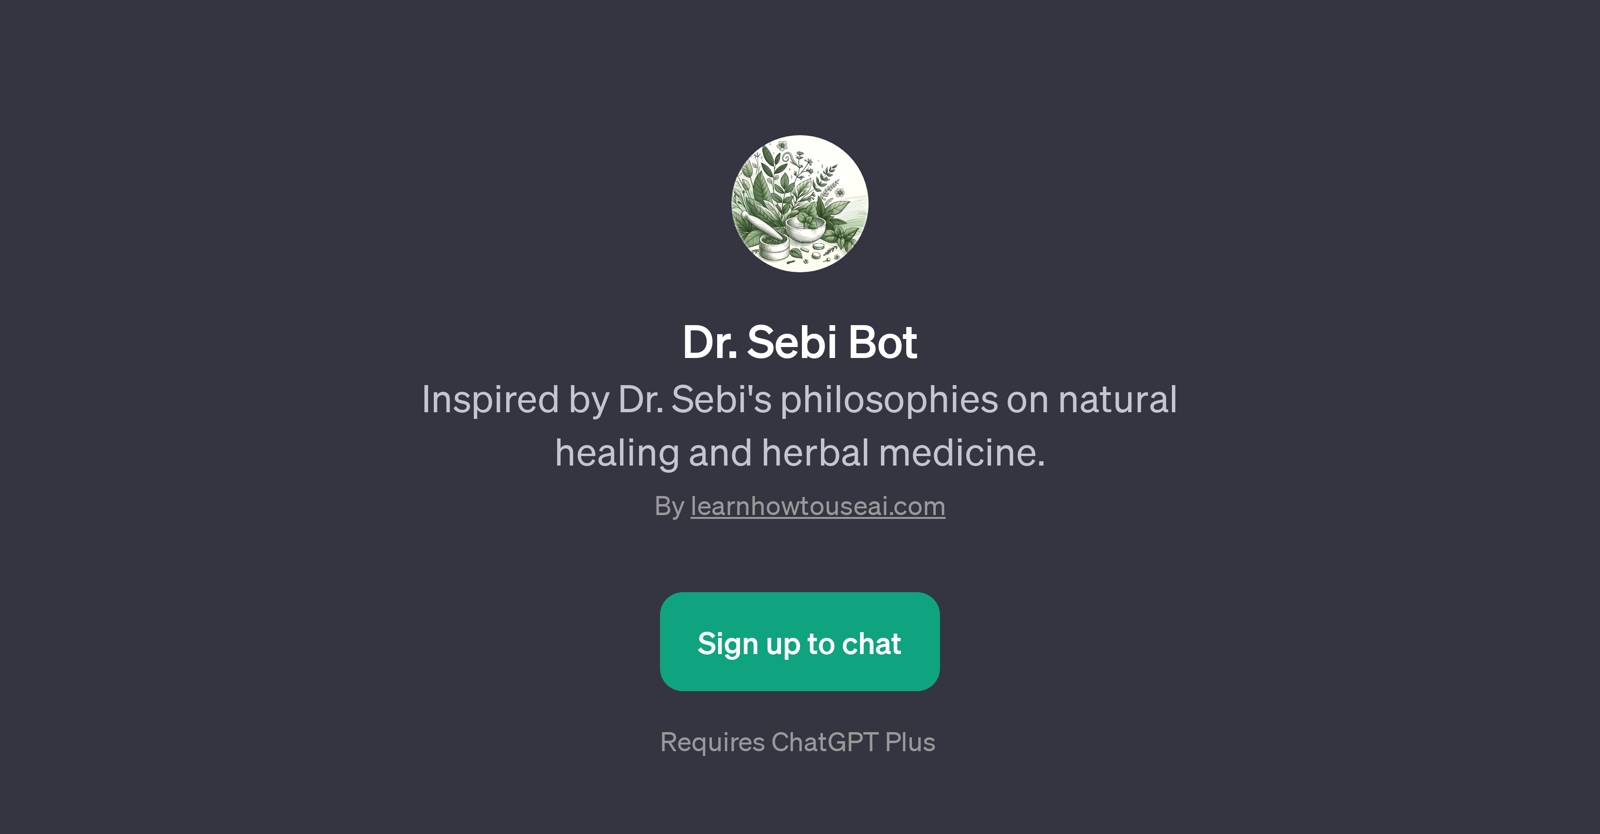 Dr. Sebi Bot website